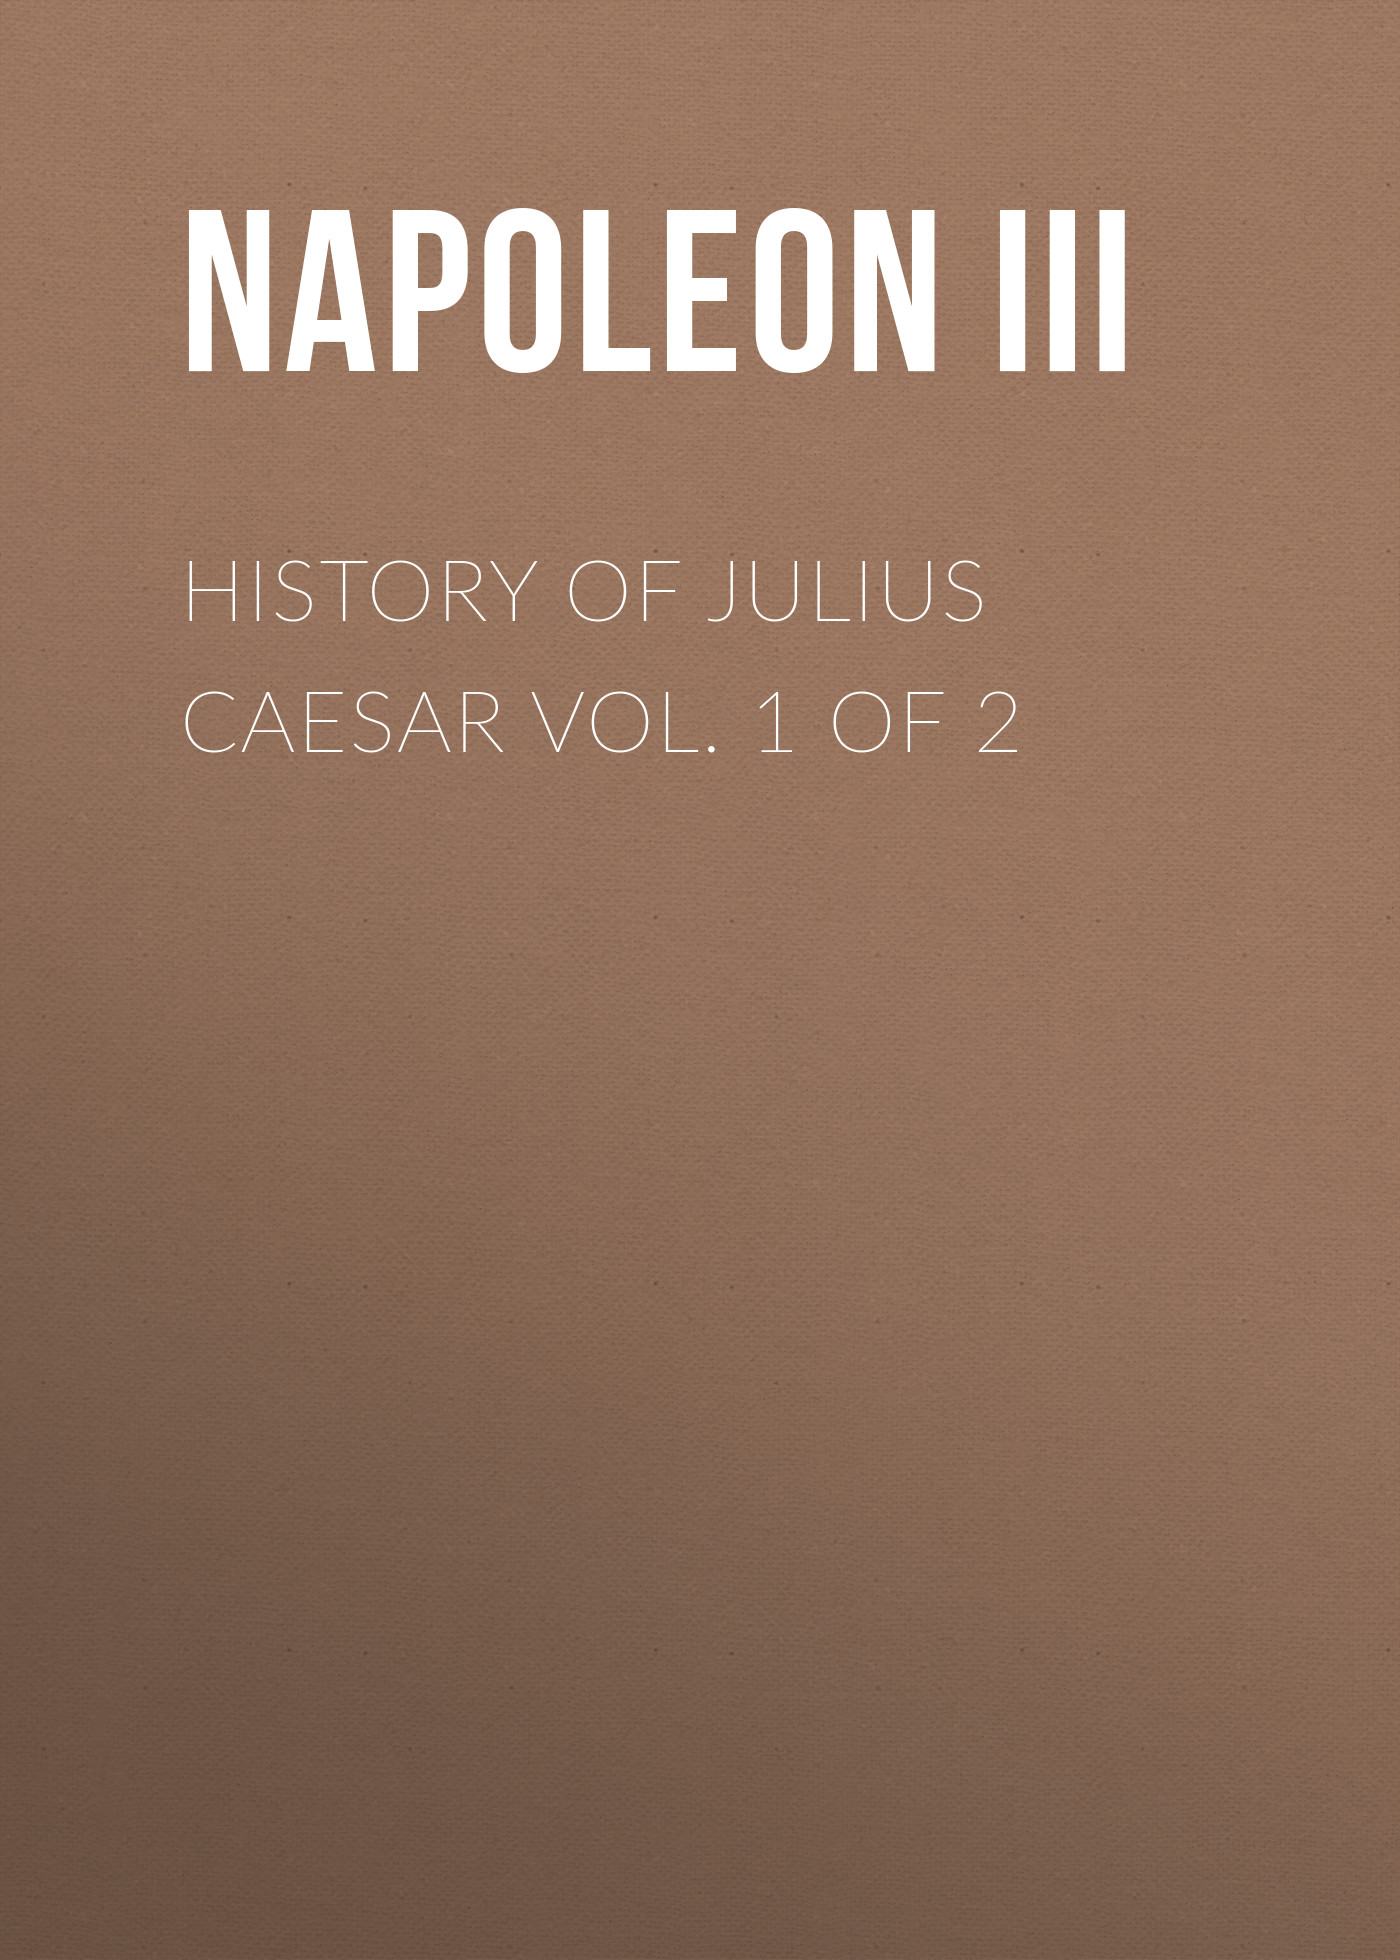 Книга History of Julius Caesar Vol. 1 of 2 из серии , созданная  Napoleon III, может относится к жанру Зарубежная старинная литература, Зарубежная классика, Биографии и Мемуары. Стоимость электронной книги History of Julius Caesar Vol. 1 of 2 с идентификатором 25291811 составляет 0 руб.